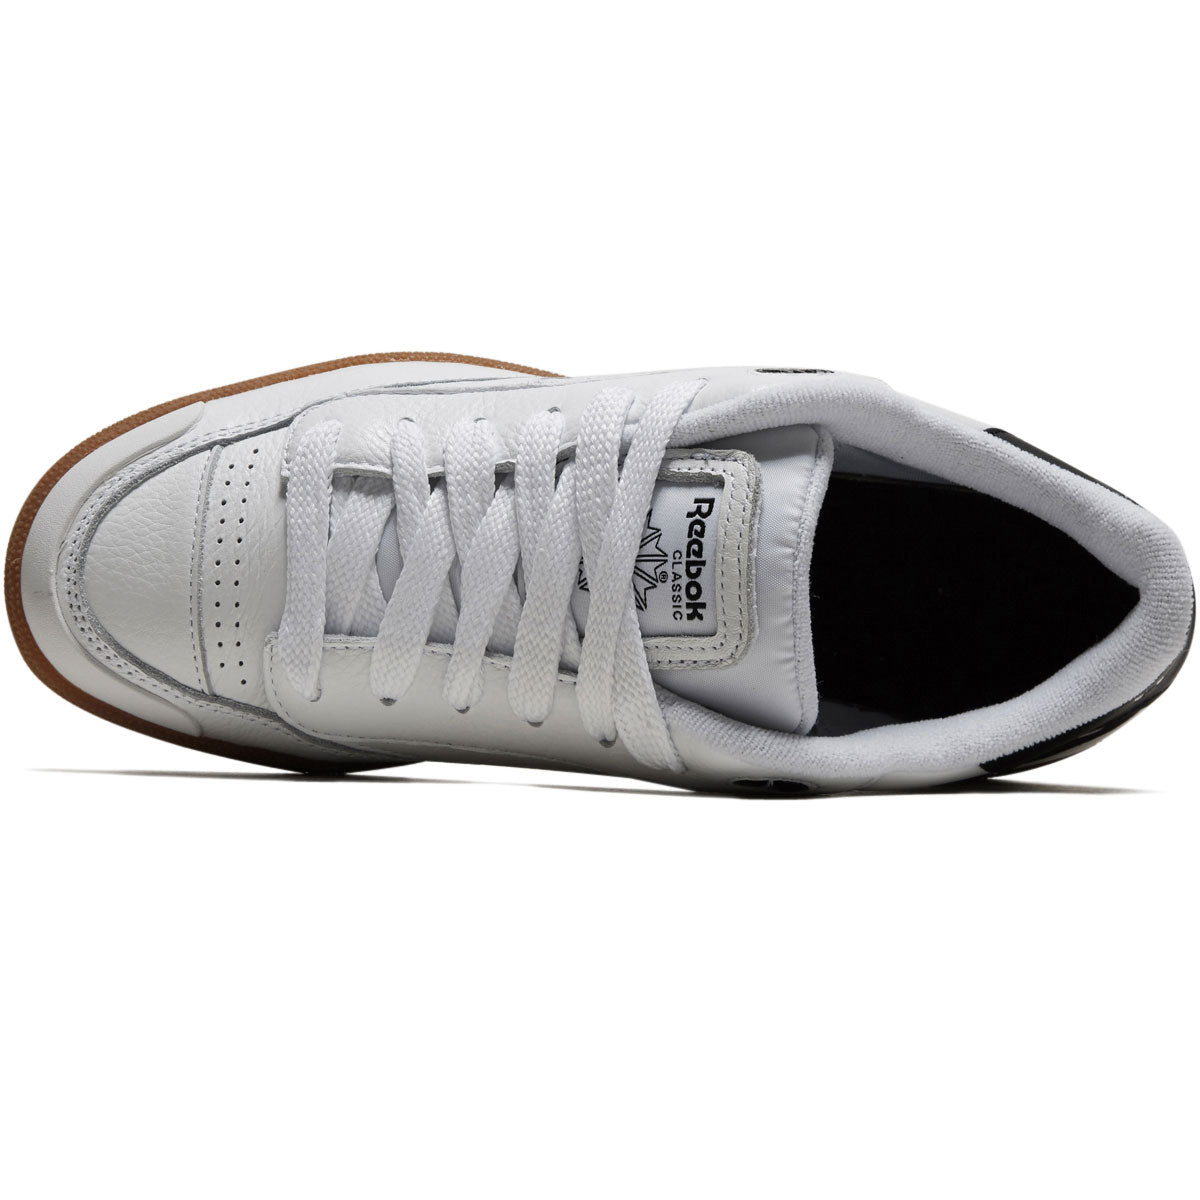 Reebok Club C Bulc Shoes - White/Black image 3